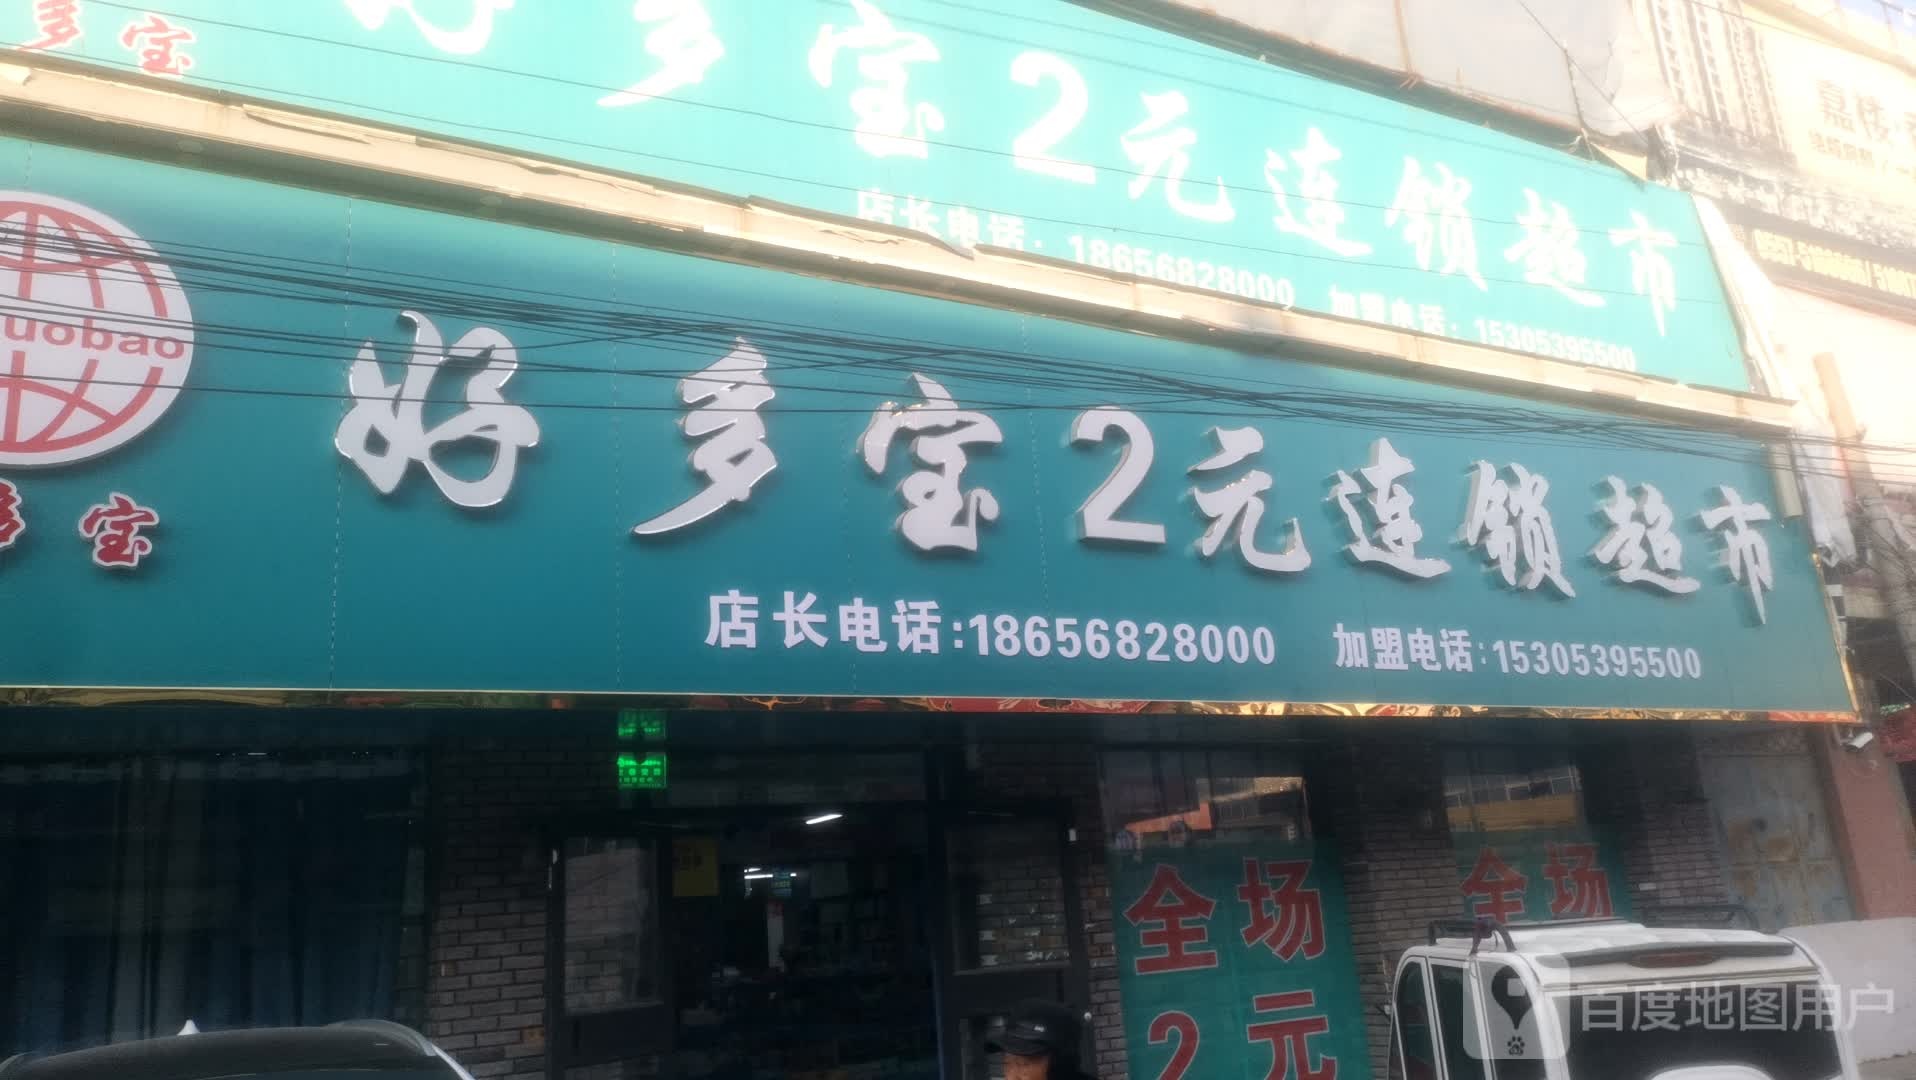 多多宝2元连锁超市(梁钟路店)